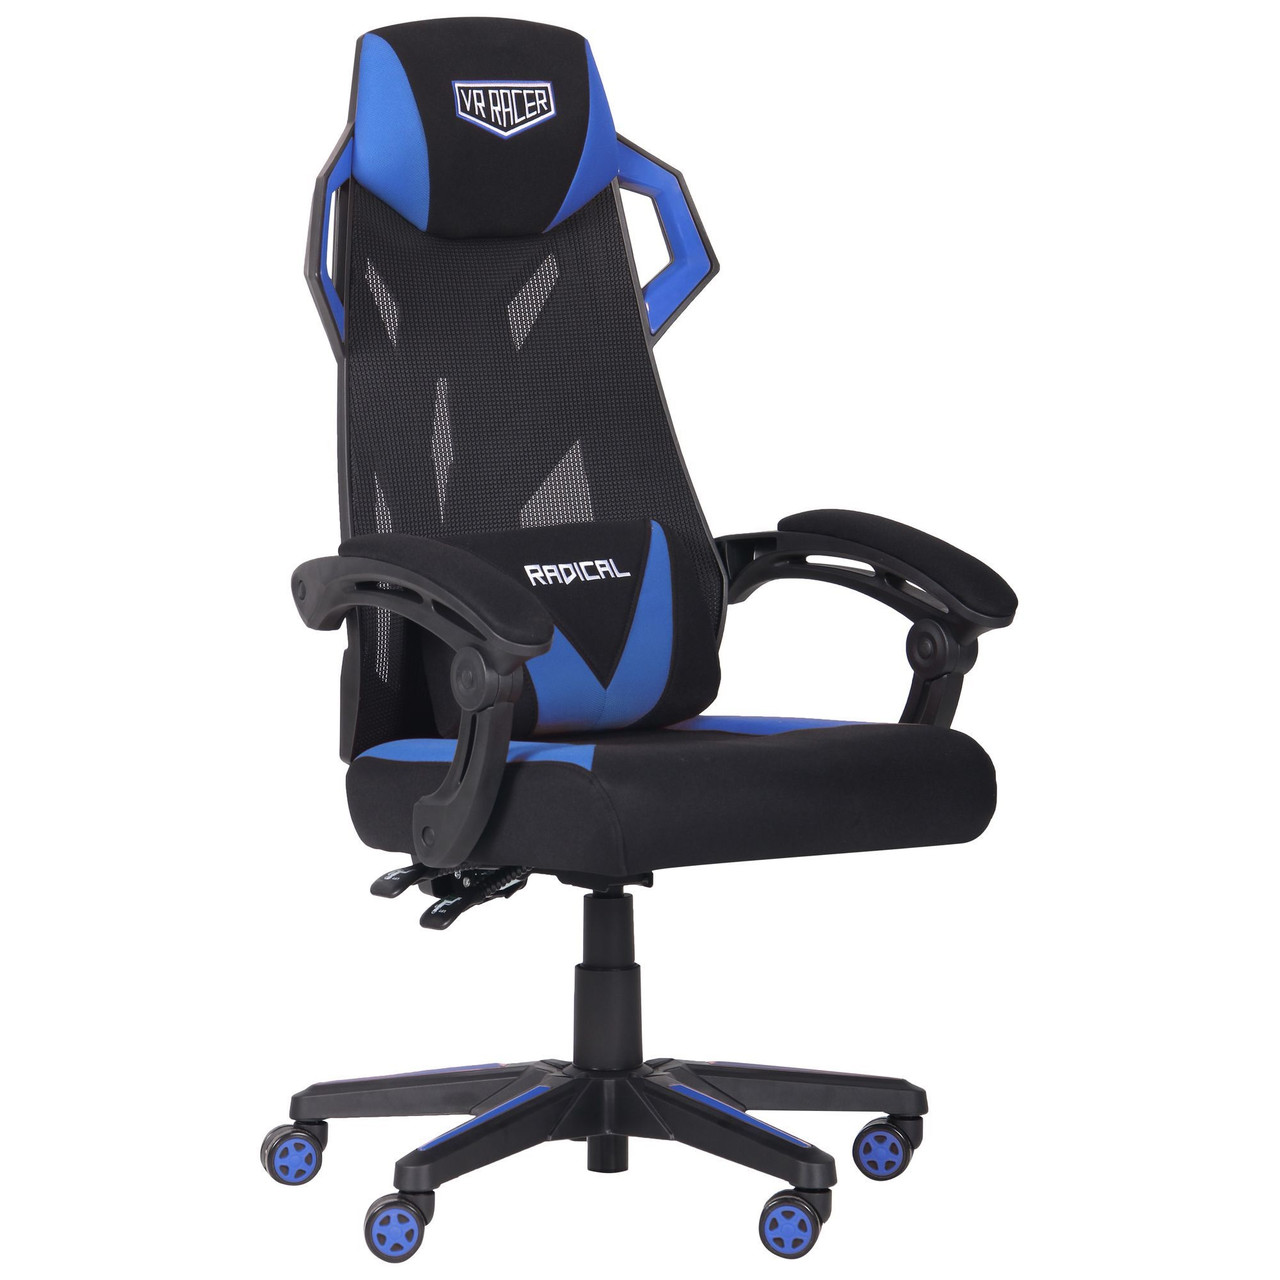 Геймерське крісло розкладне для геймерів VR Racer Radical Garrus чорно-синє регульоване по висоті TM AMF